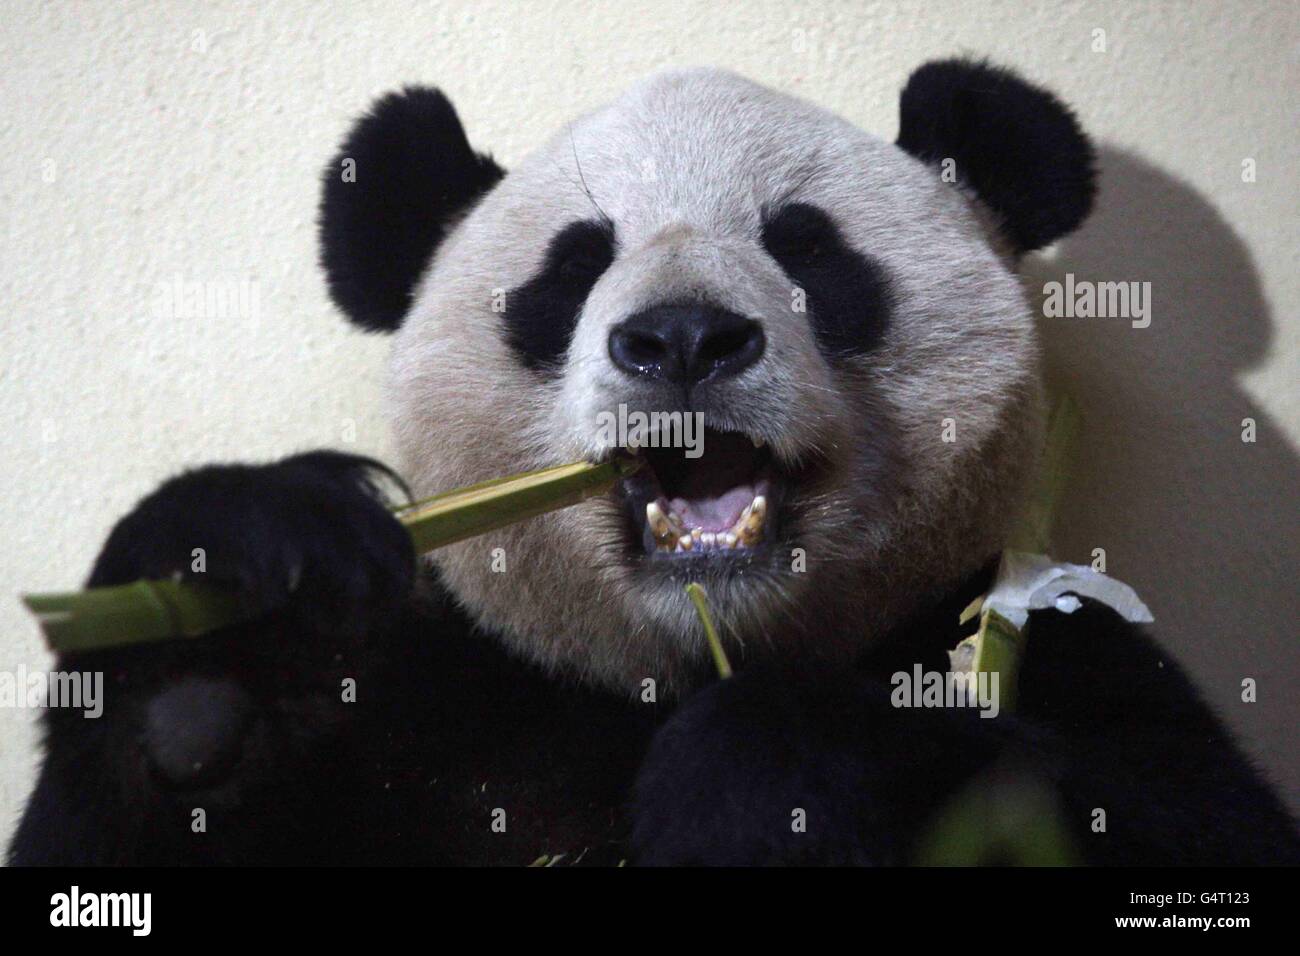 Yang Guang il panda allo Zoo di Edimburgo dove ha incontrato il suo custode Sharon Hatton. PREMERE ASSOCIAZIONE foto. Data immagine: Venerdì 23 dicembre 2011. Il credito fotografico dovrebbe essere: David Cheskin/filo PA Foto Stock